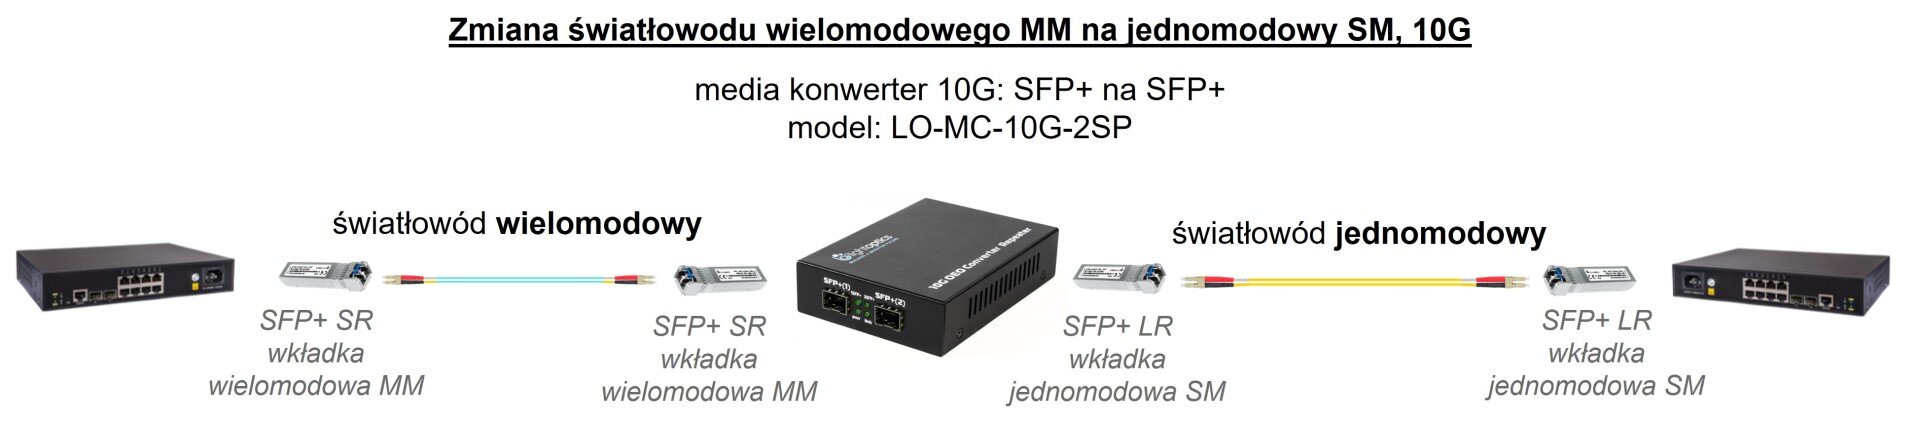 konwerter światłowodowy SFP+10G MM na SM.jpg